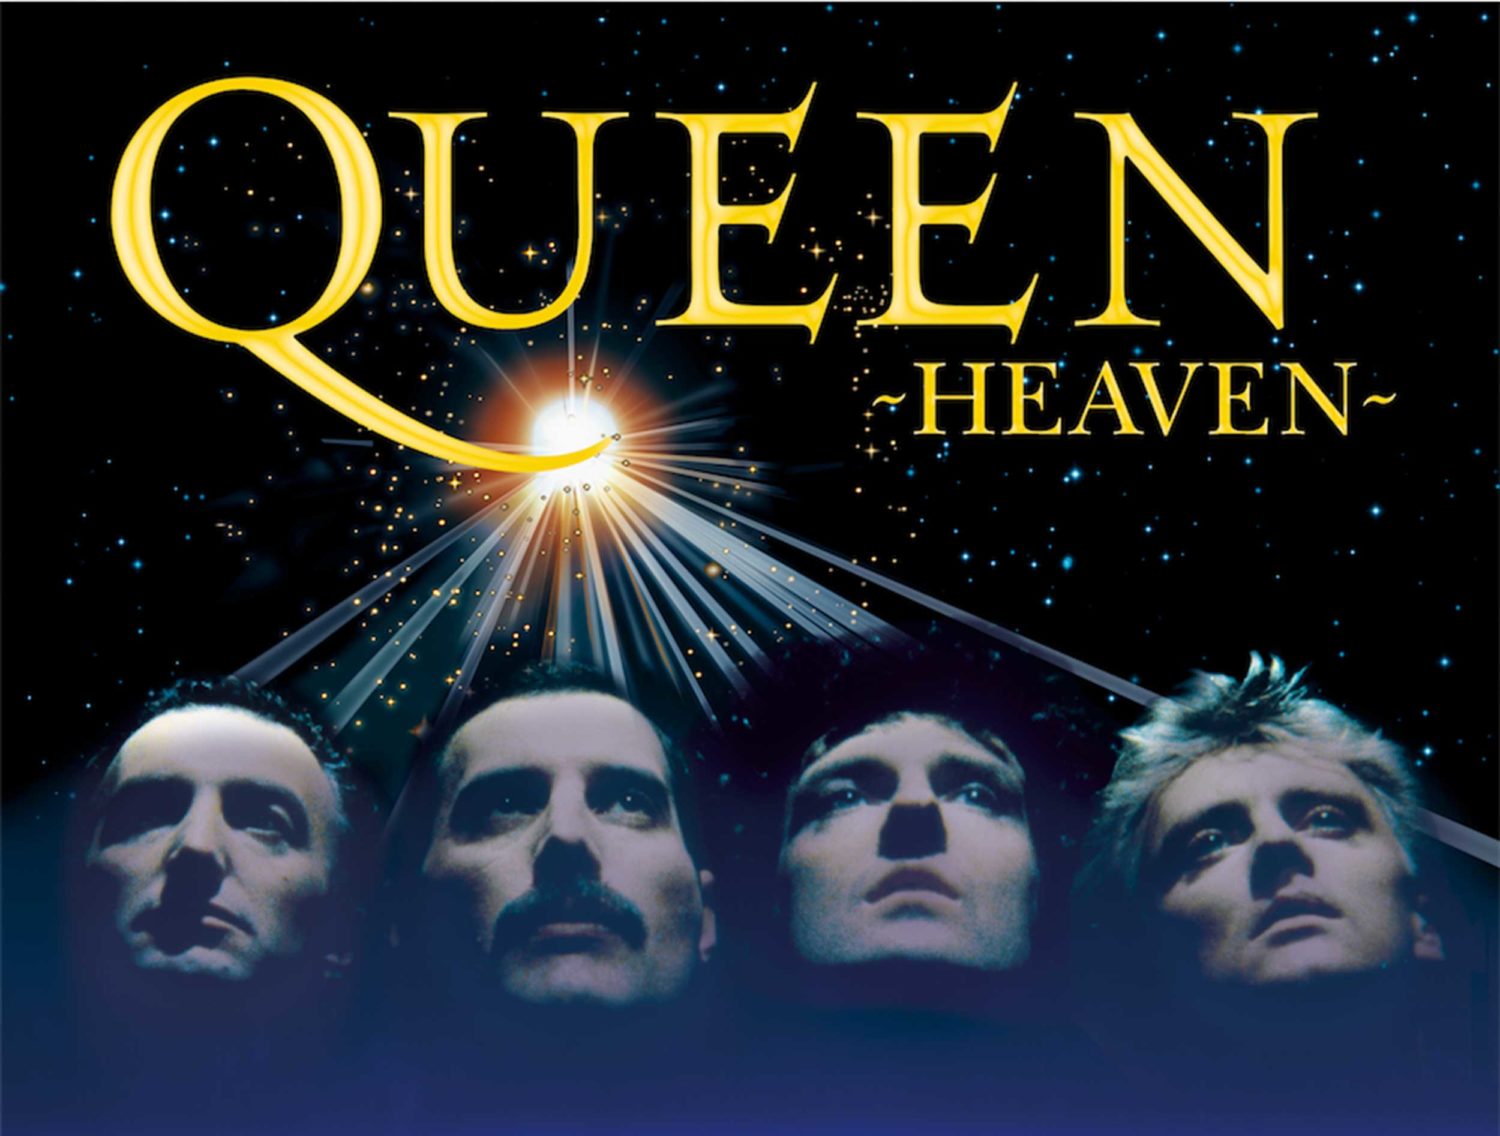 Queen Heaven Musikshow Planetarium